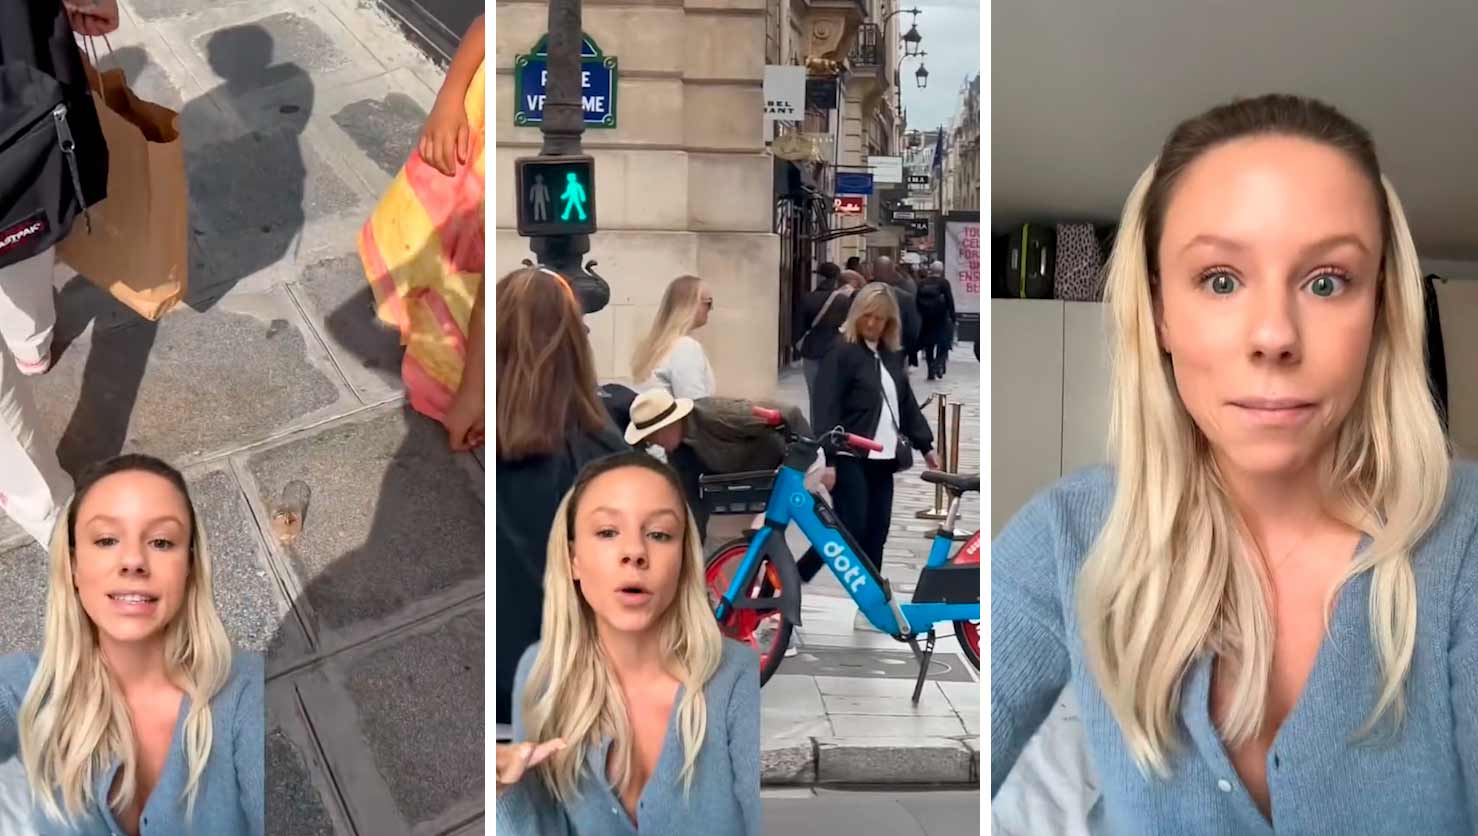 Videó: Amerikai figyelmeztetés a 'pohár-csalásról', amelyet Párizs utcáin turisták ellen alkalmaznak. Fotók és videó: Tiktok @americanfille